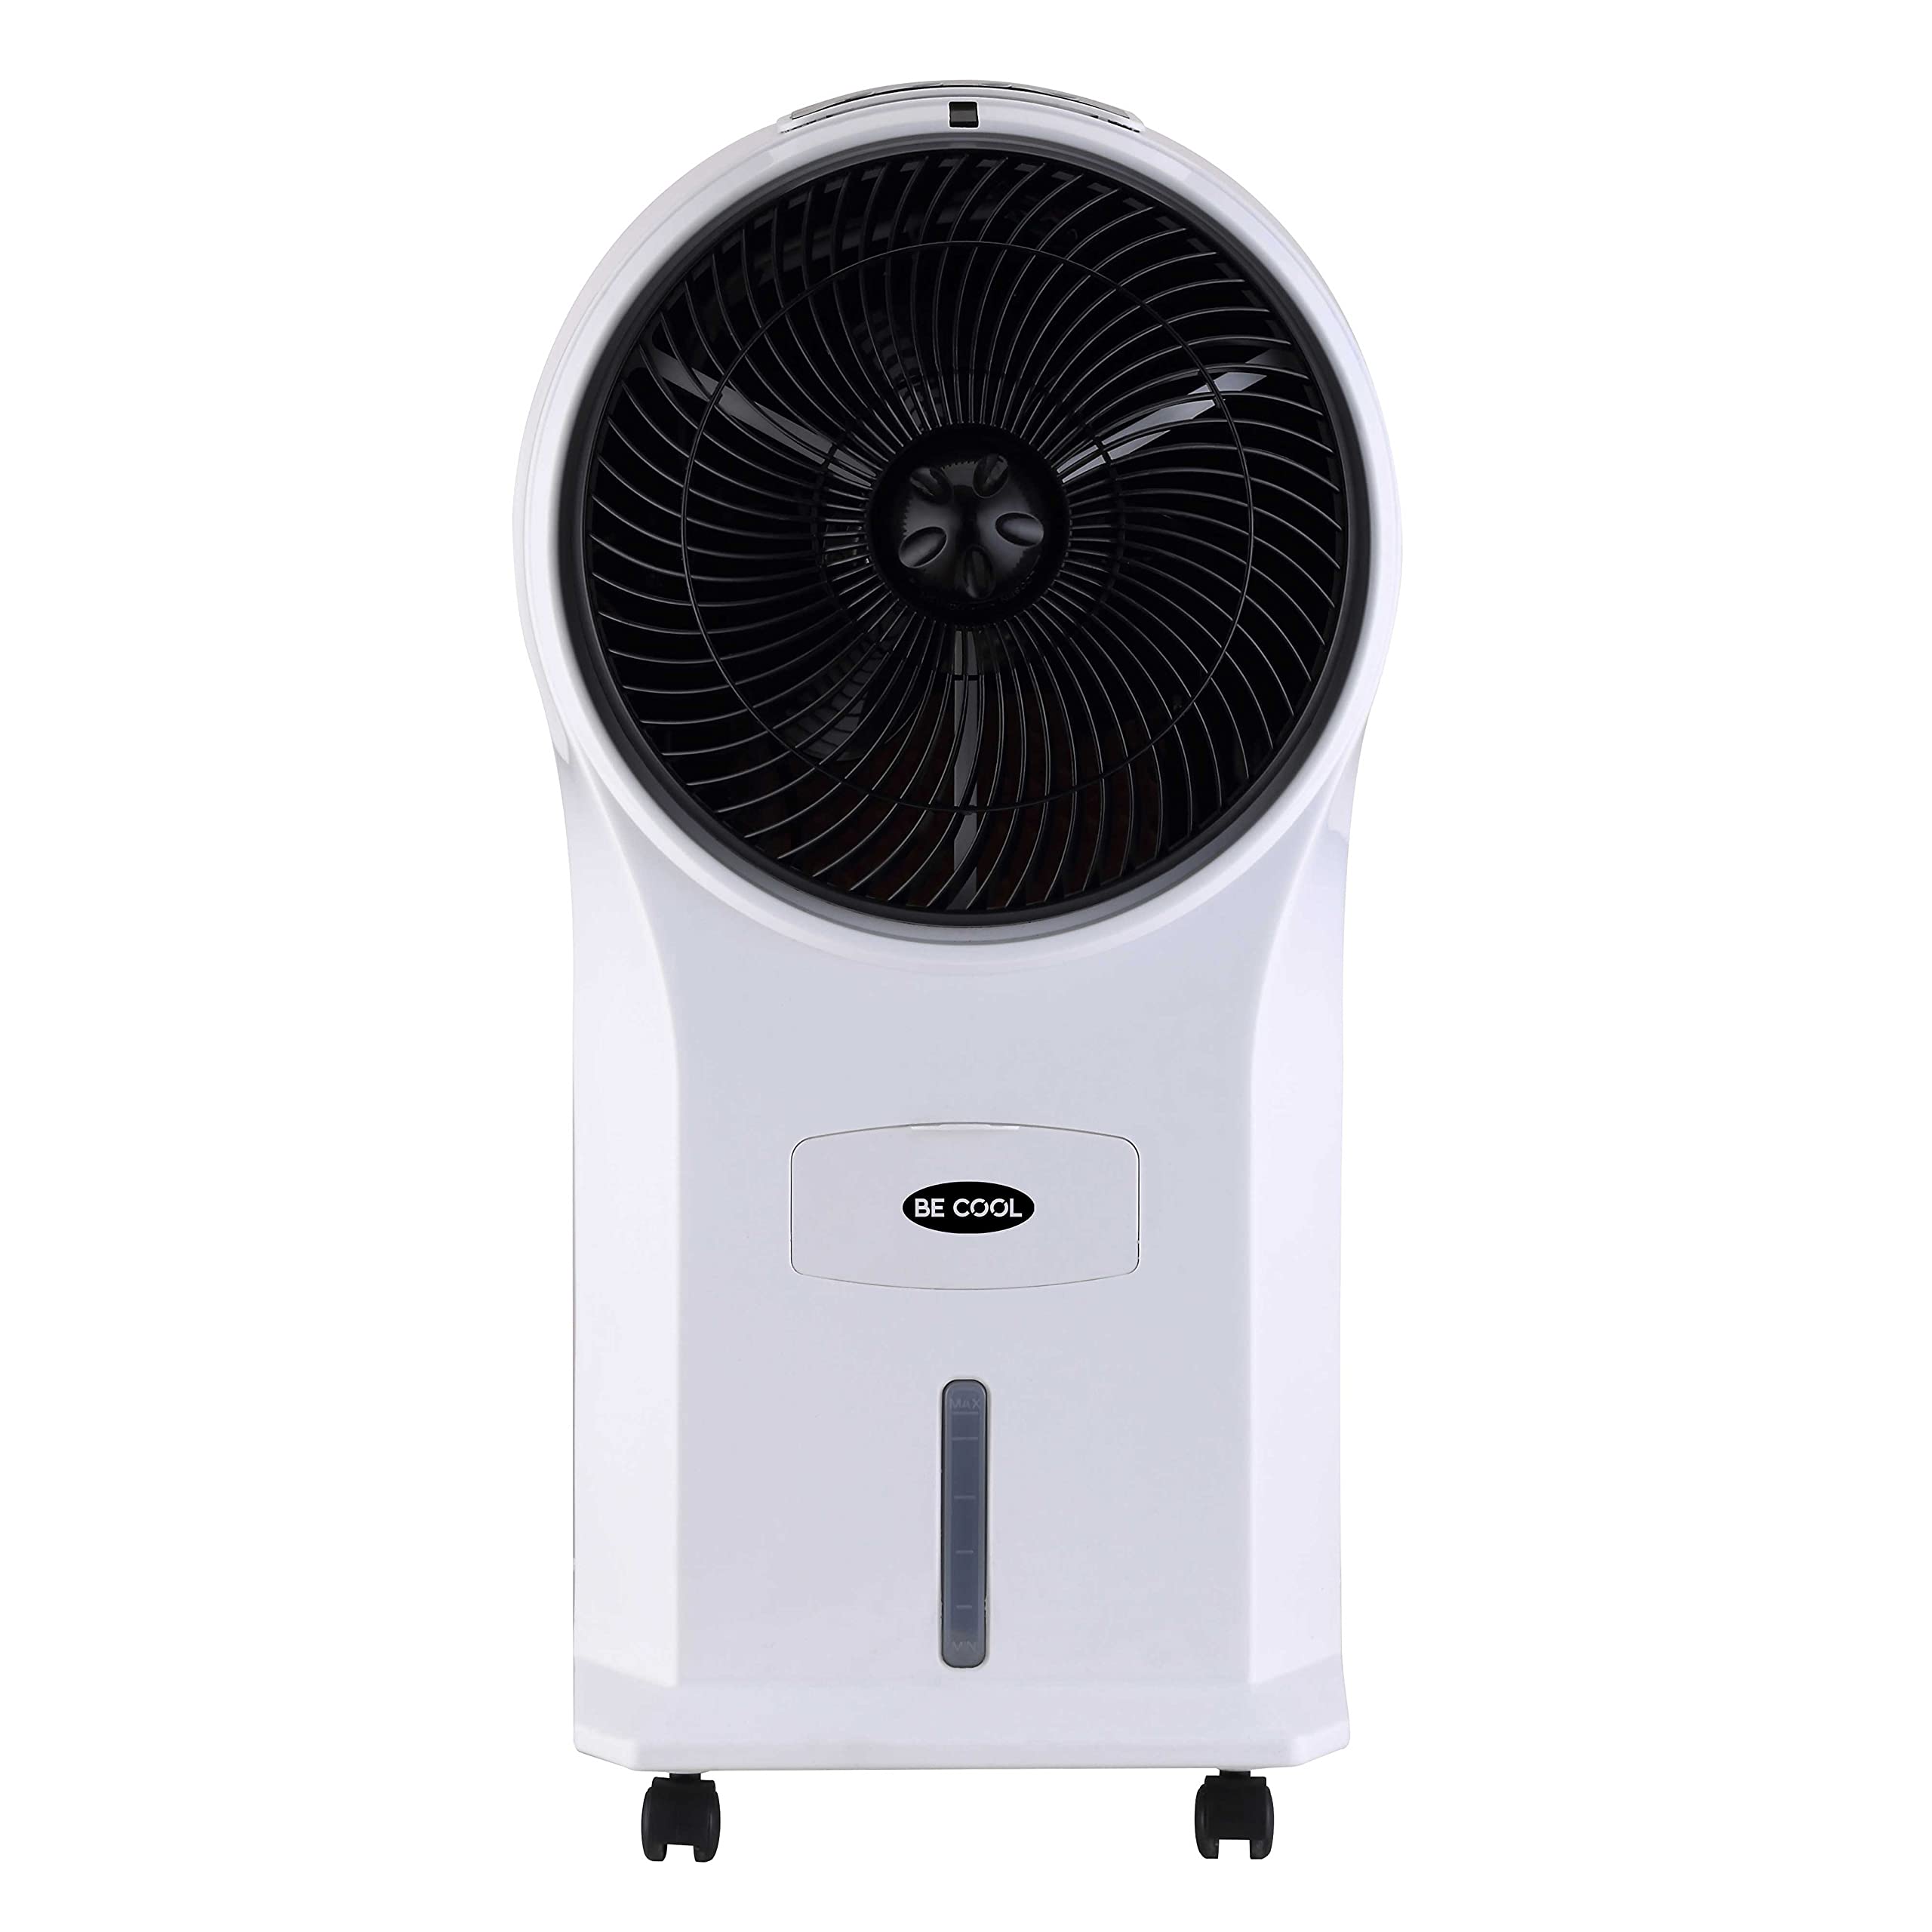 BE COOL Luftkühler mit Wasserkühlung, 3 in 1 Verdunstungskühler, Luftbefeuchter, Ventilator, 3 Stufen, 5 Liter Wassertank, 45 Watt, 1050 m³/h, Timer, Fernbedienung, Weiß/Schwarz